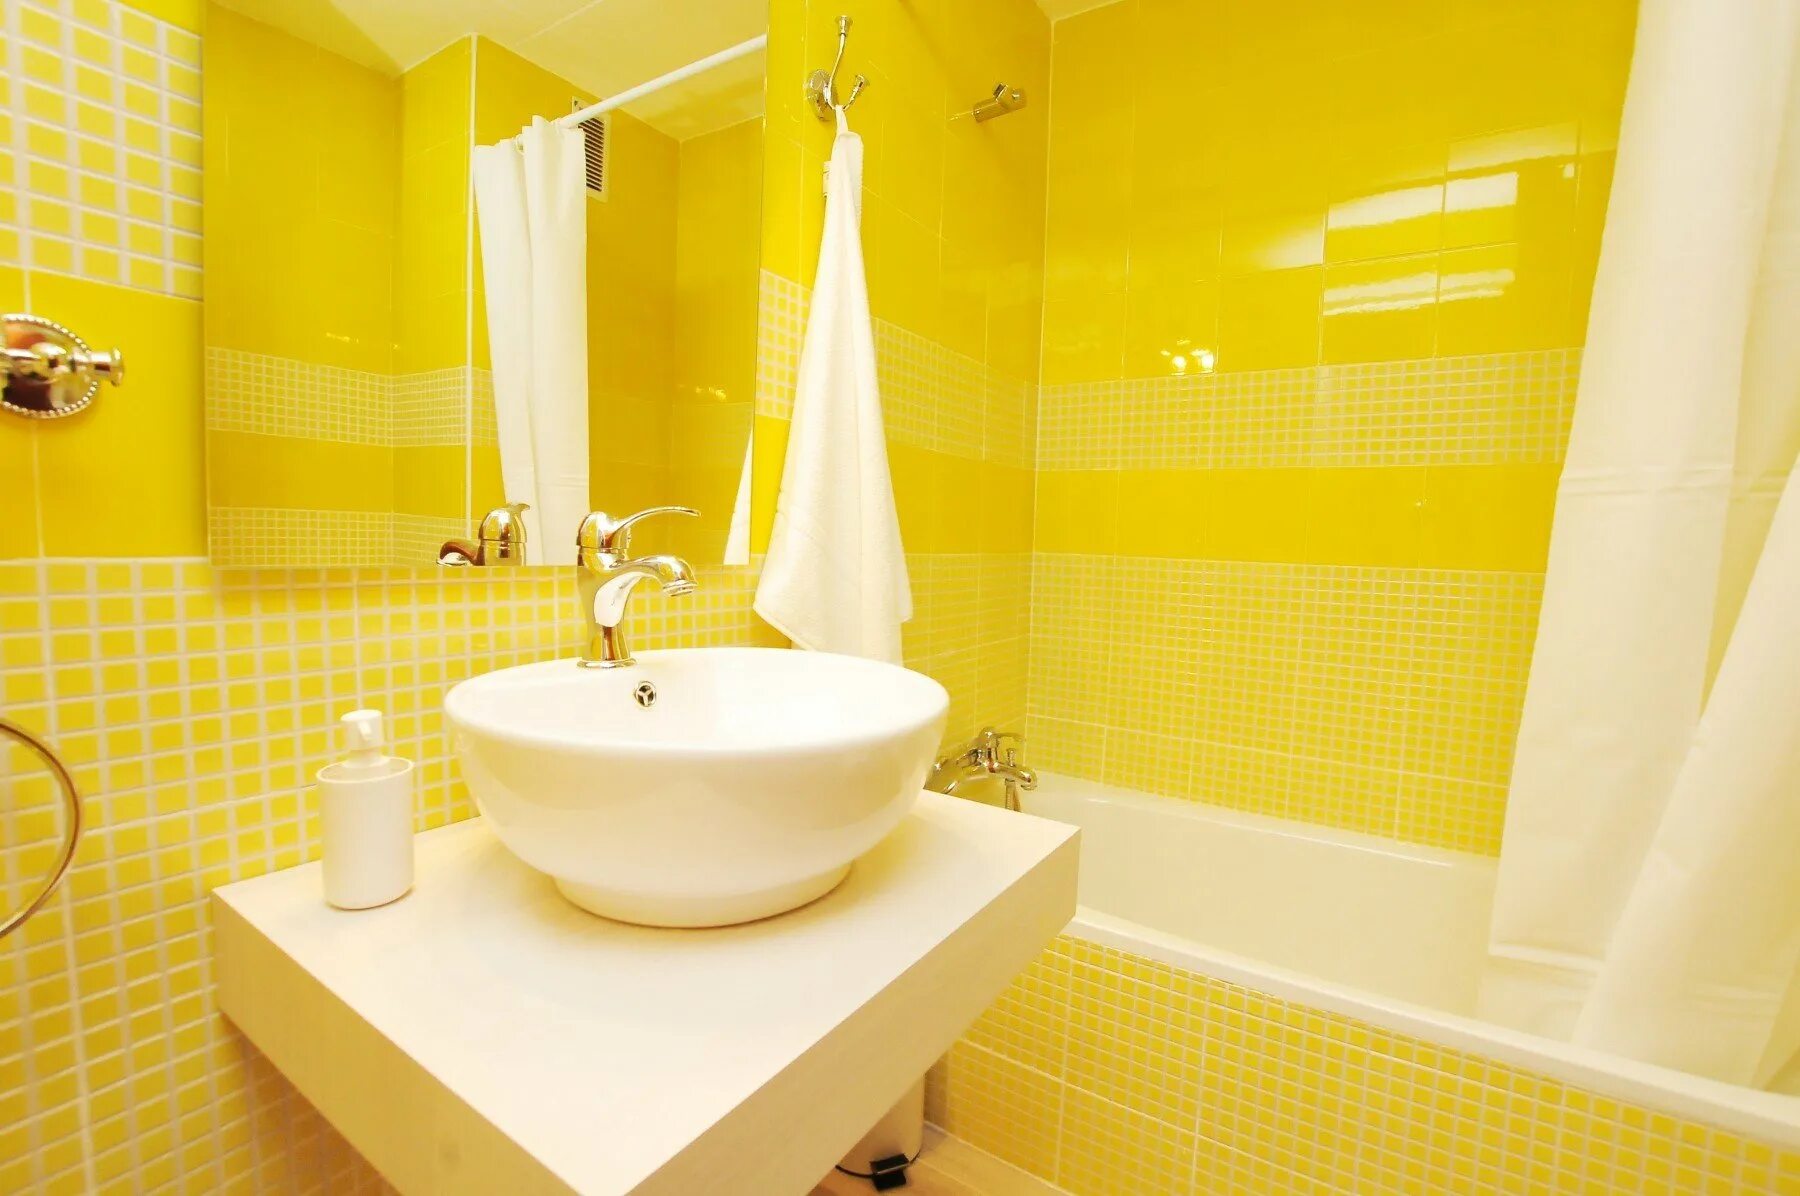 Желтая плитка купить. Желтая ванная комната. Ванная с желтой плиткой. Желтая плитка для ванной комнаты. Ванная в желтом цвете.